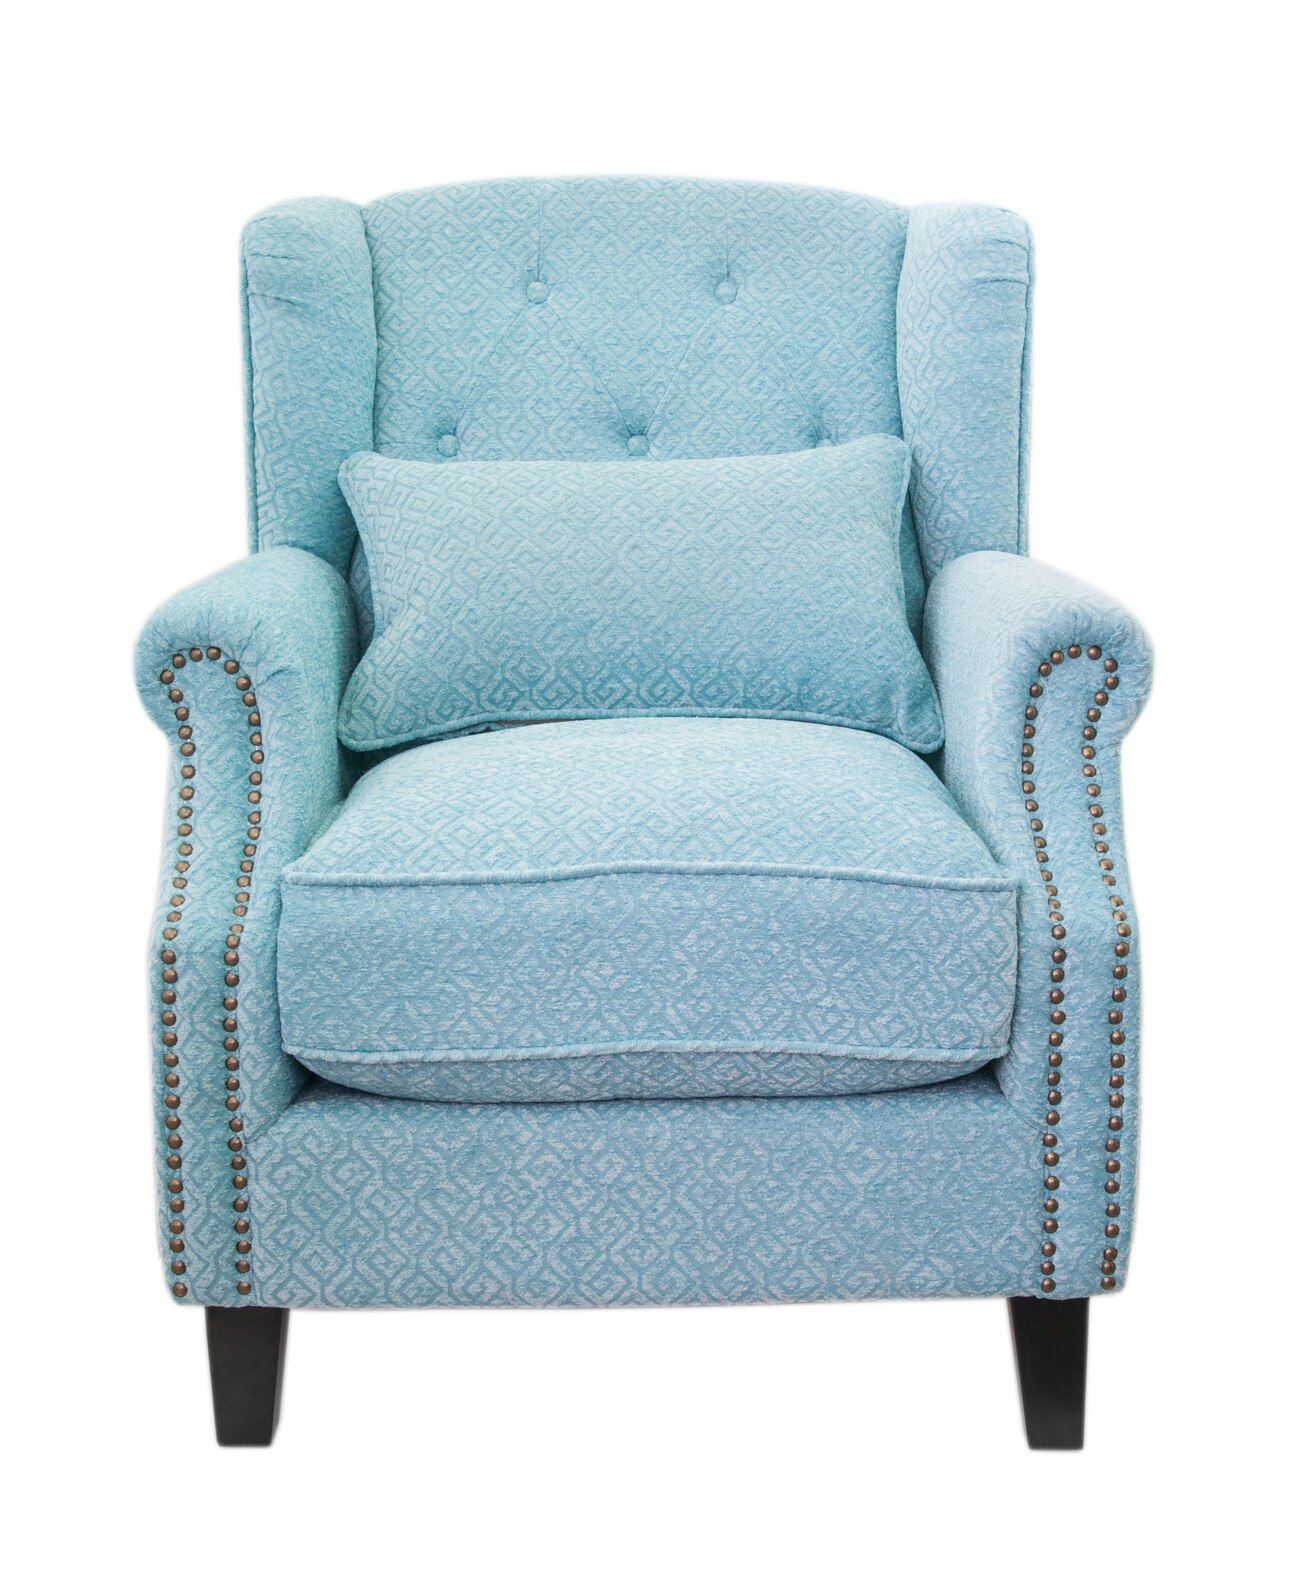 Кресло с мягкими подлокотниками голубое Scott blue